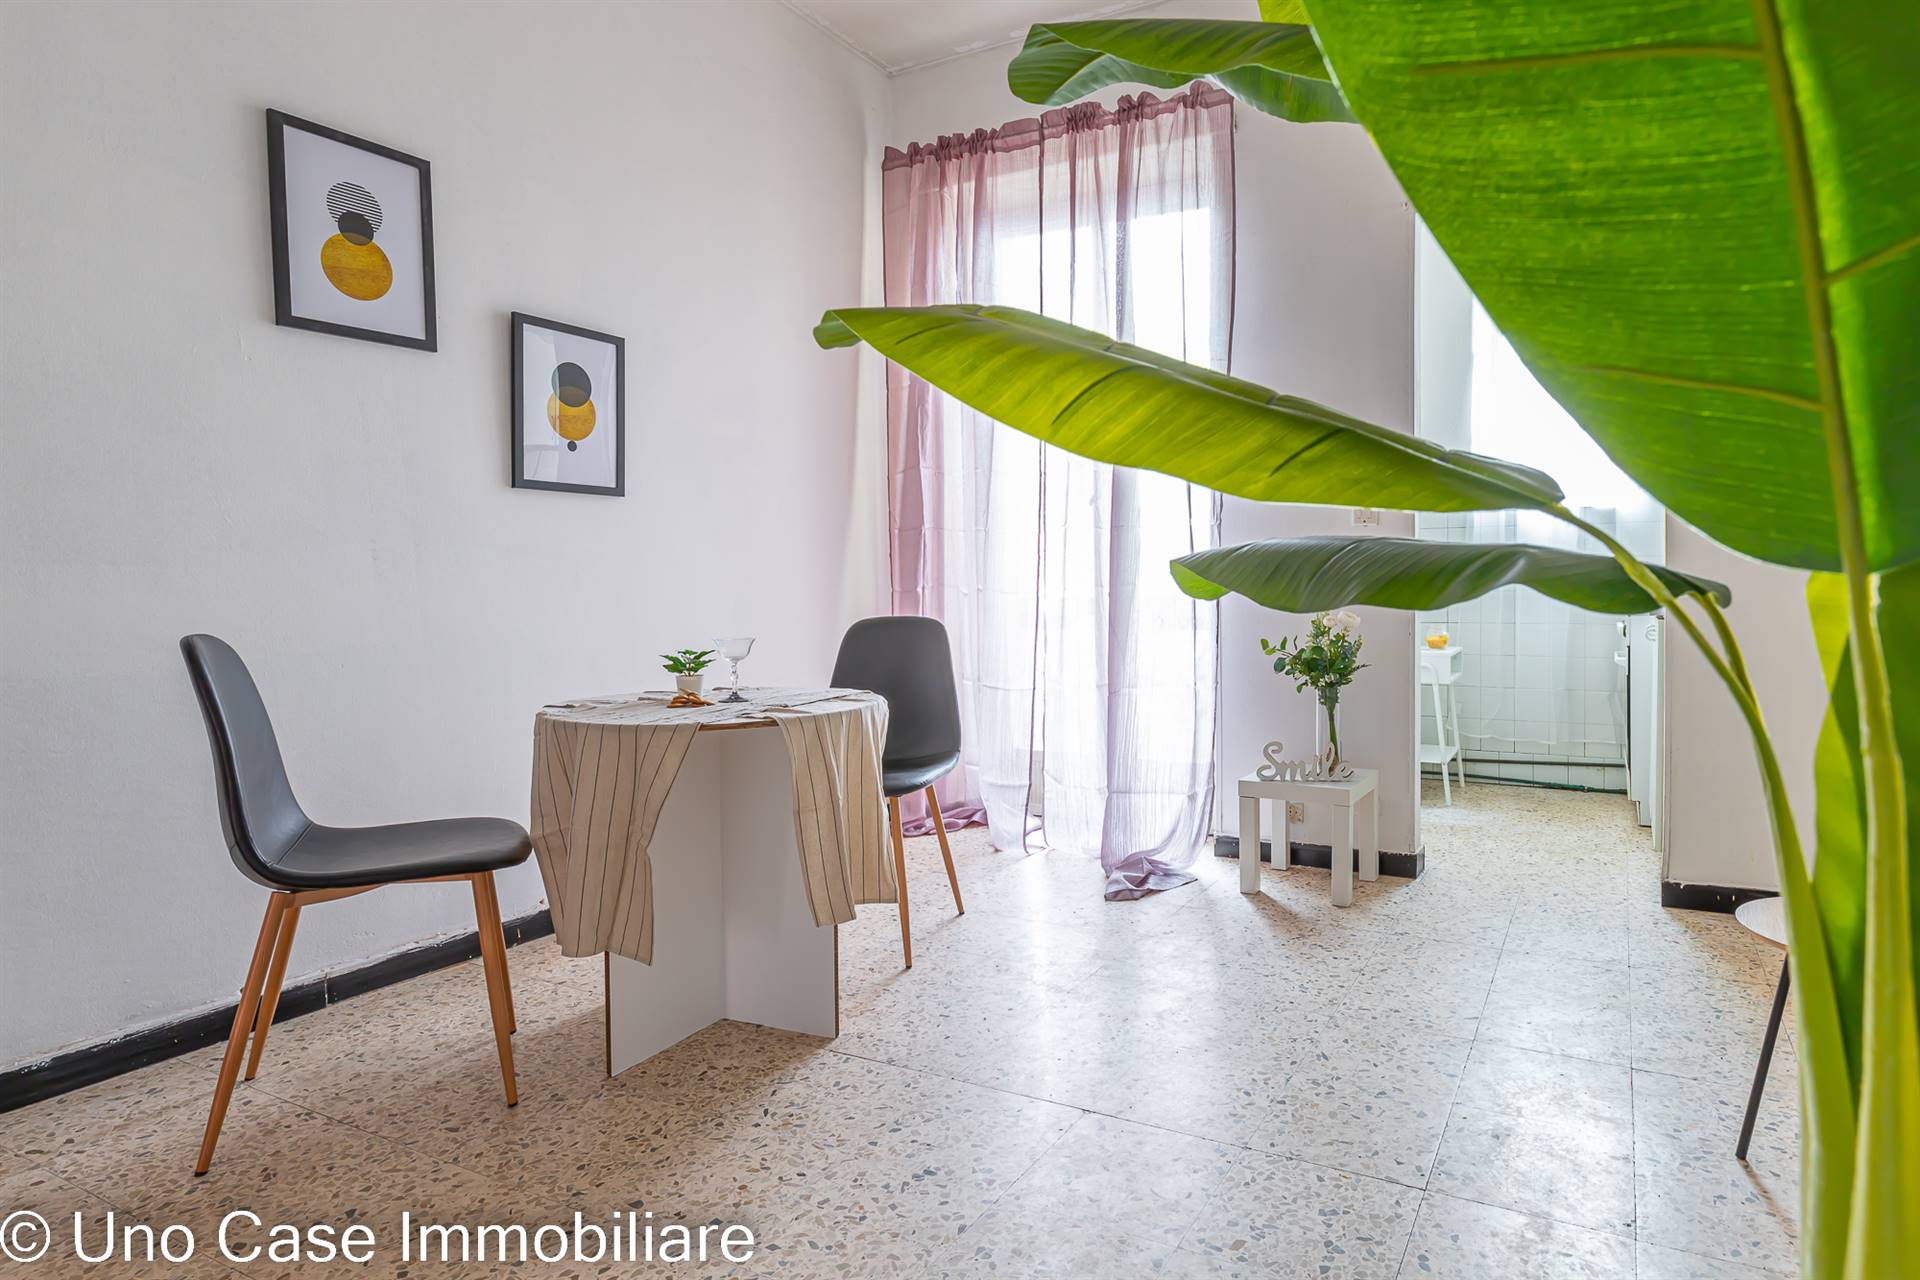 Appartamento in vendita a Banchette, 2 locali, zona Zona: Borgonuovo, prezzo € 38.000 | CambioCasa.it